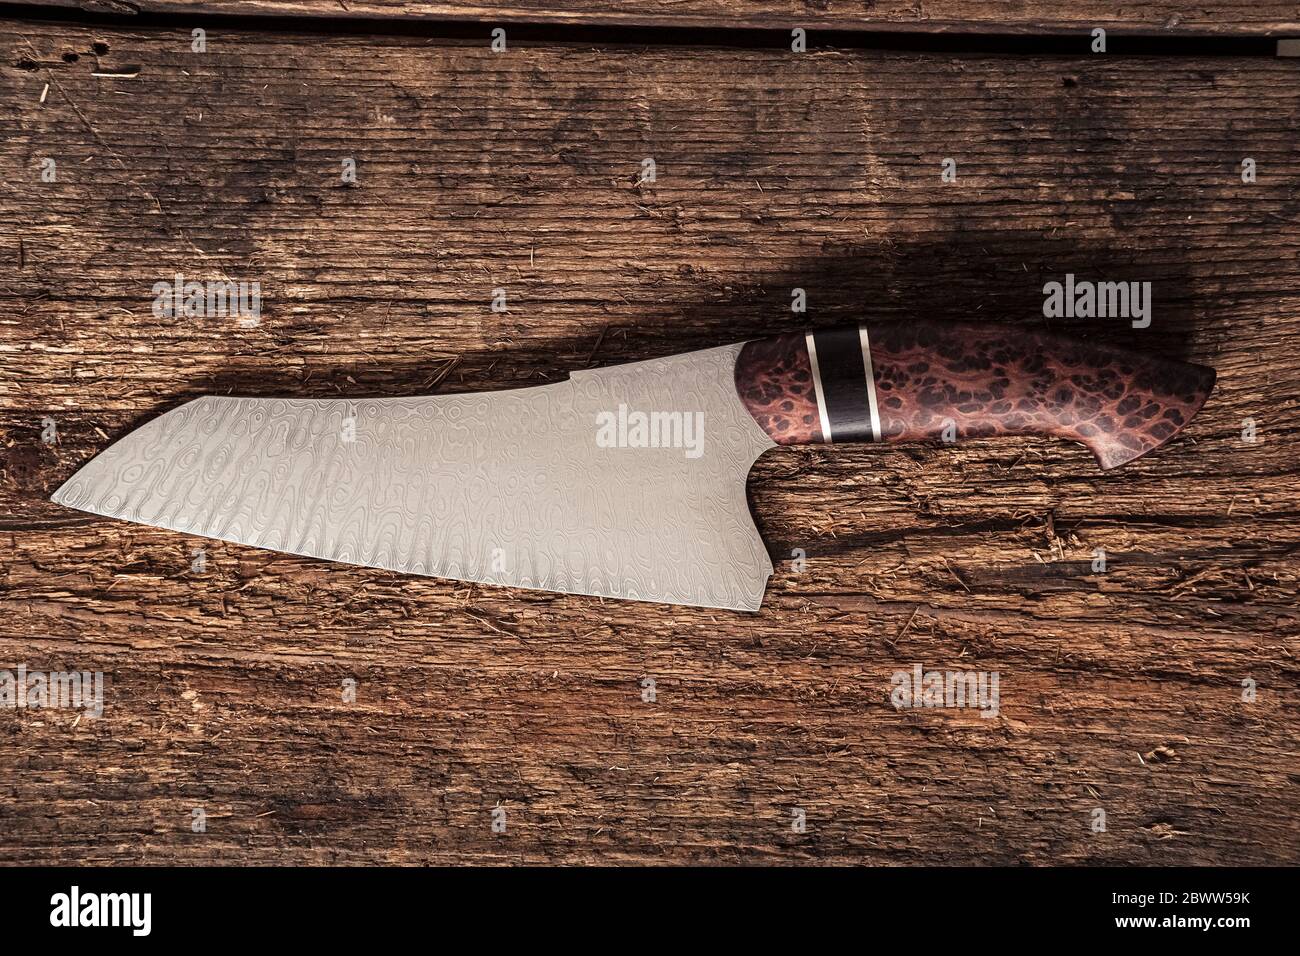 https://c8.alamy.com/comp/2BWW59K/hand-forged-knife-from-damask-steel-2BWW59K.jpg